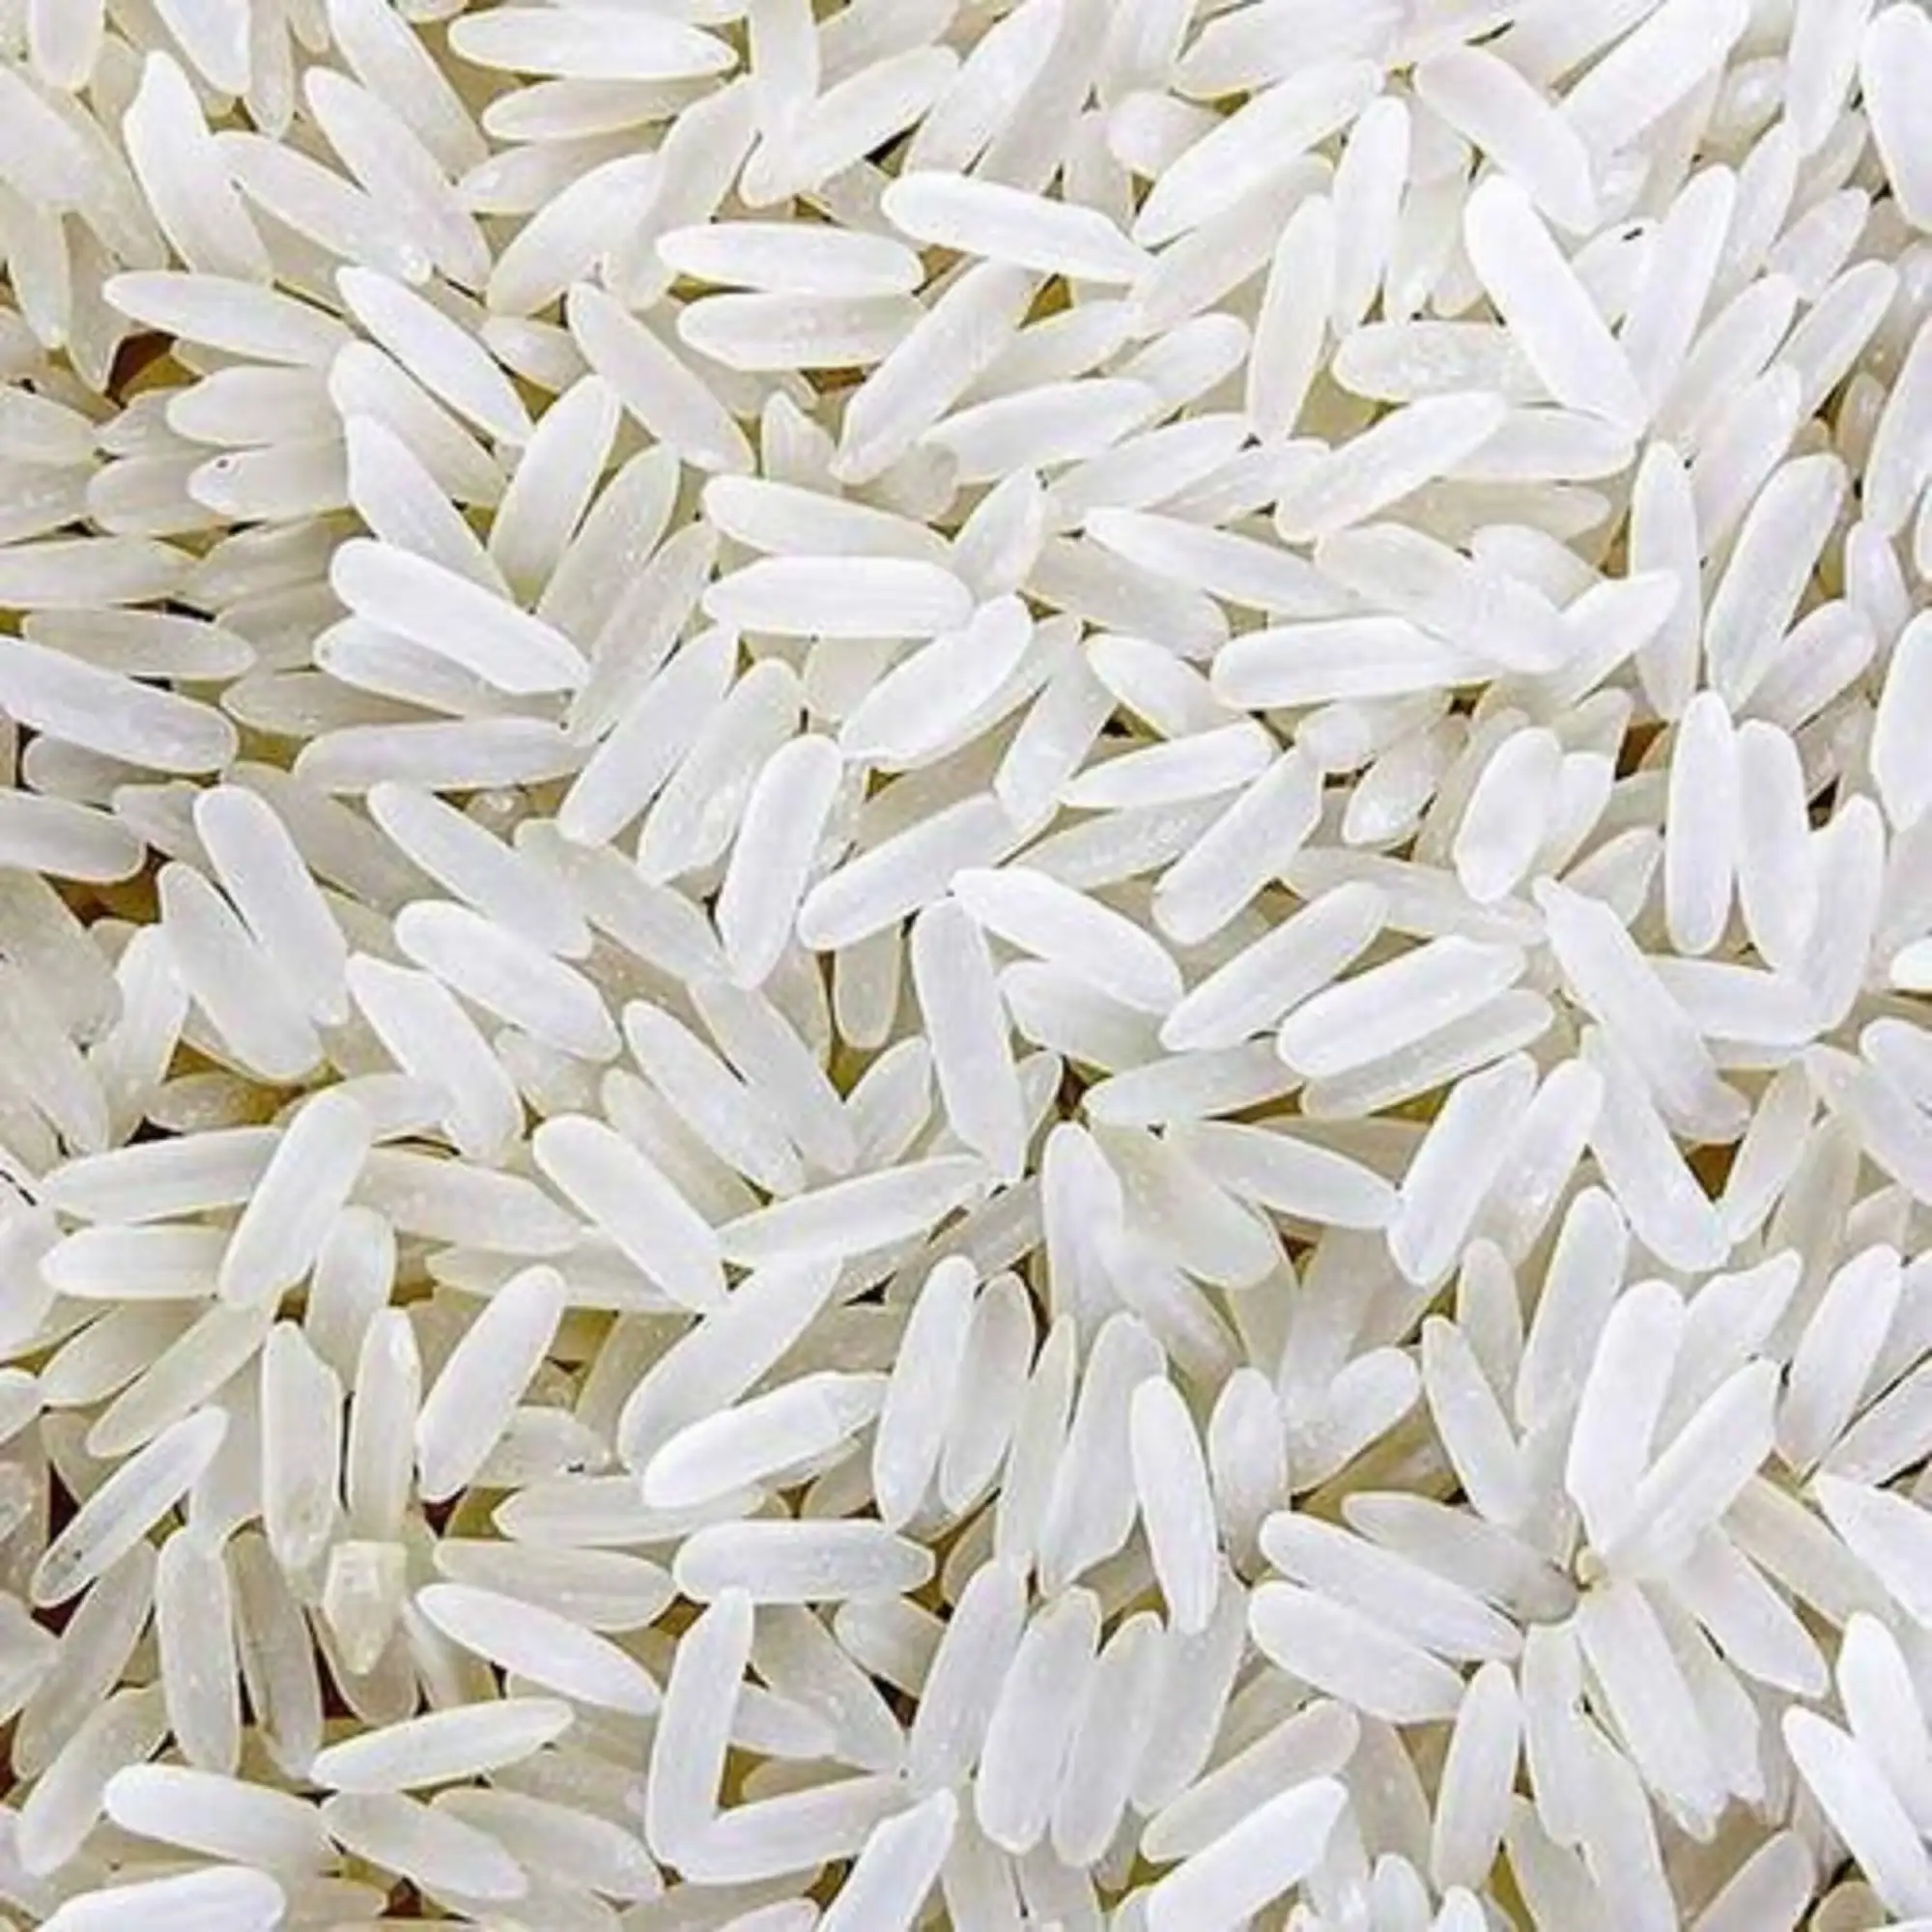 Riz superlatif Goût exquis de riz pakistanais de qualité supérieure Meilleur exportateur de riz basmati et non basmati